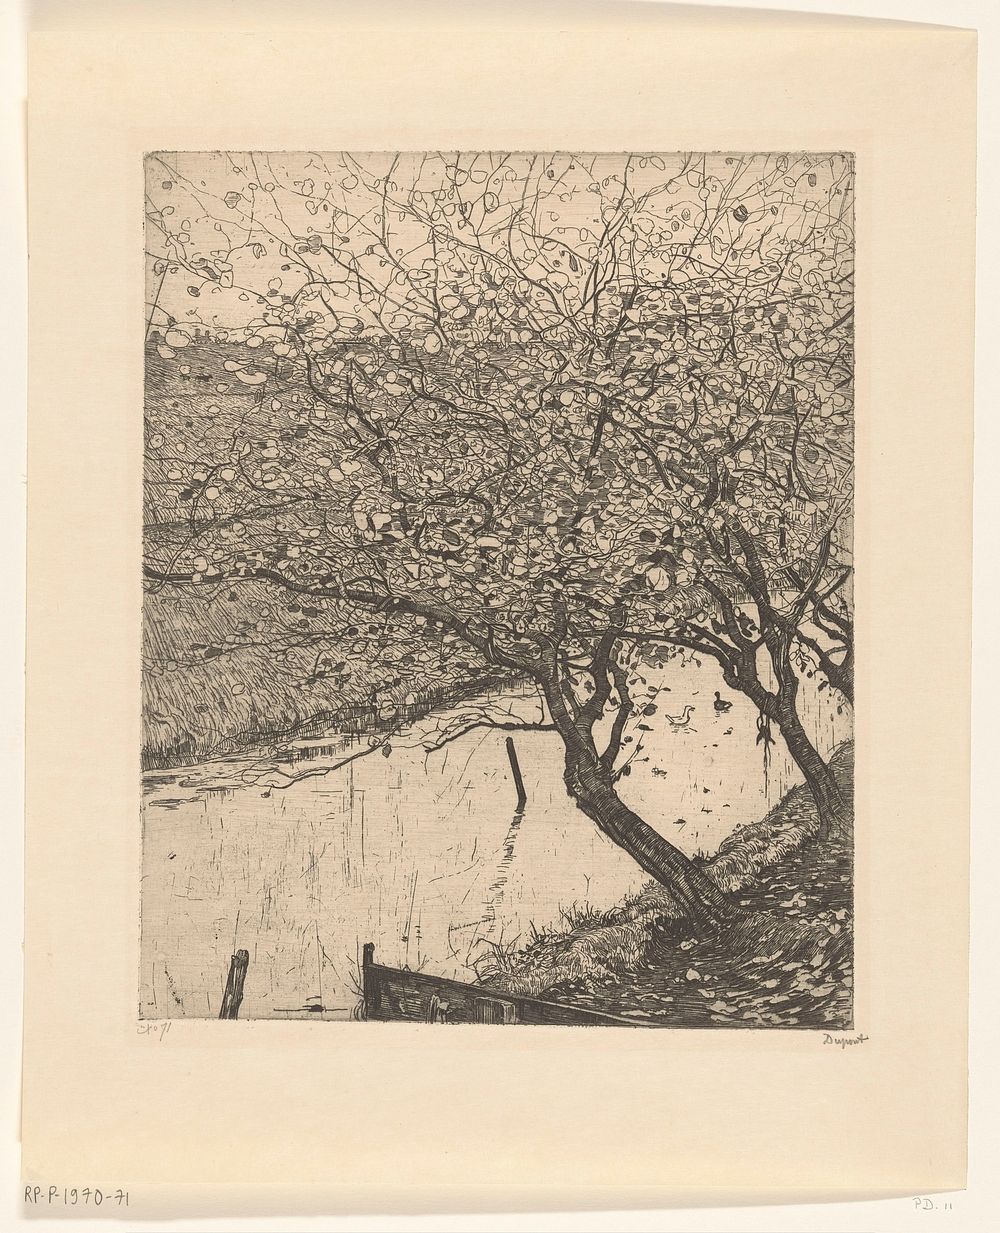 Scheefgegroeide appelbomen langs een sloot (1895) by Pieter Dupont